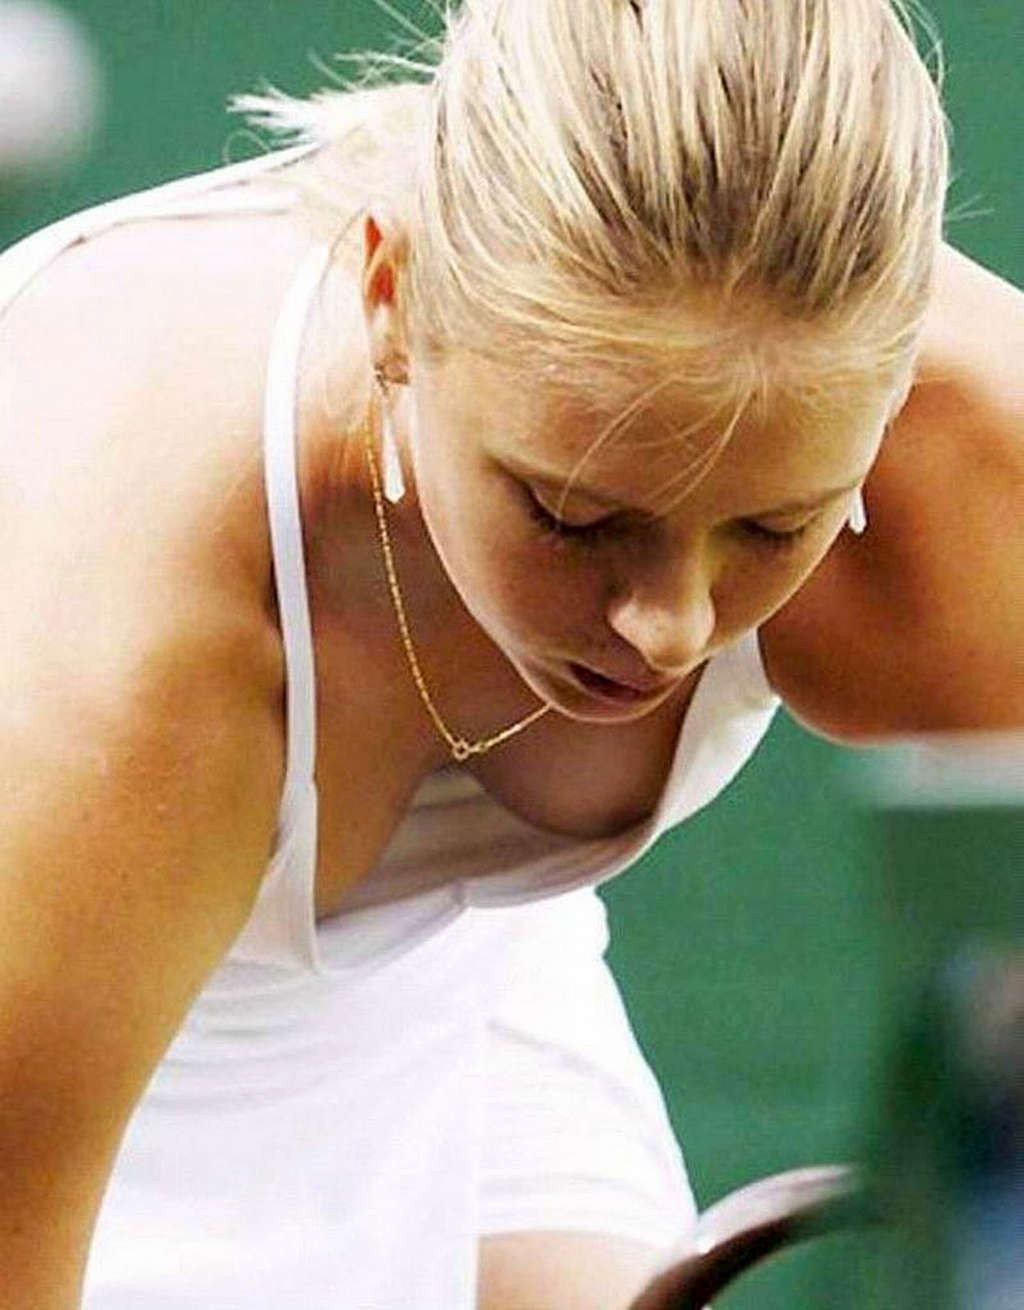 Maria Sharapova nipple slip while play tennis paparazzi shoots #75346483